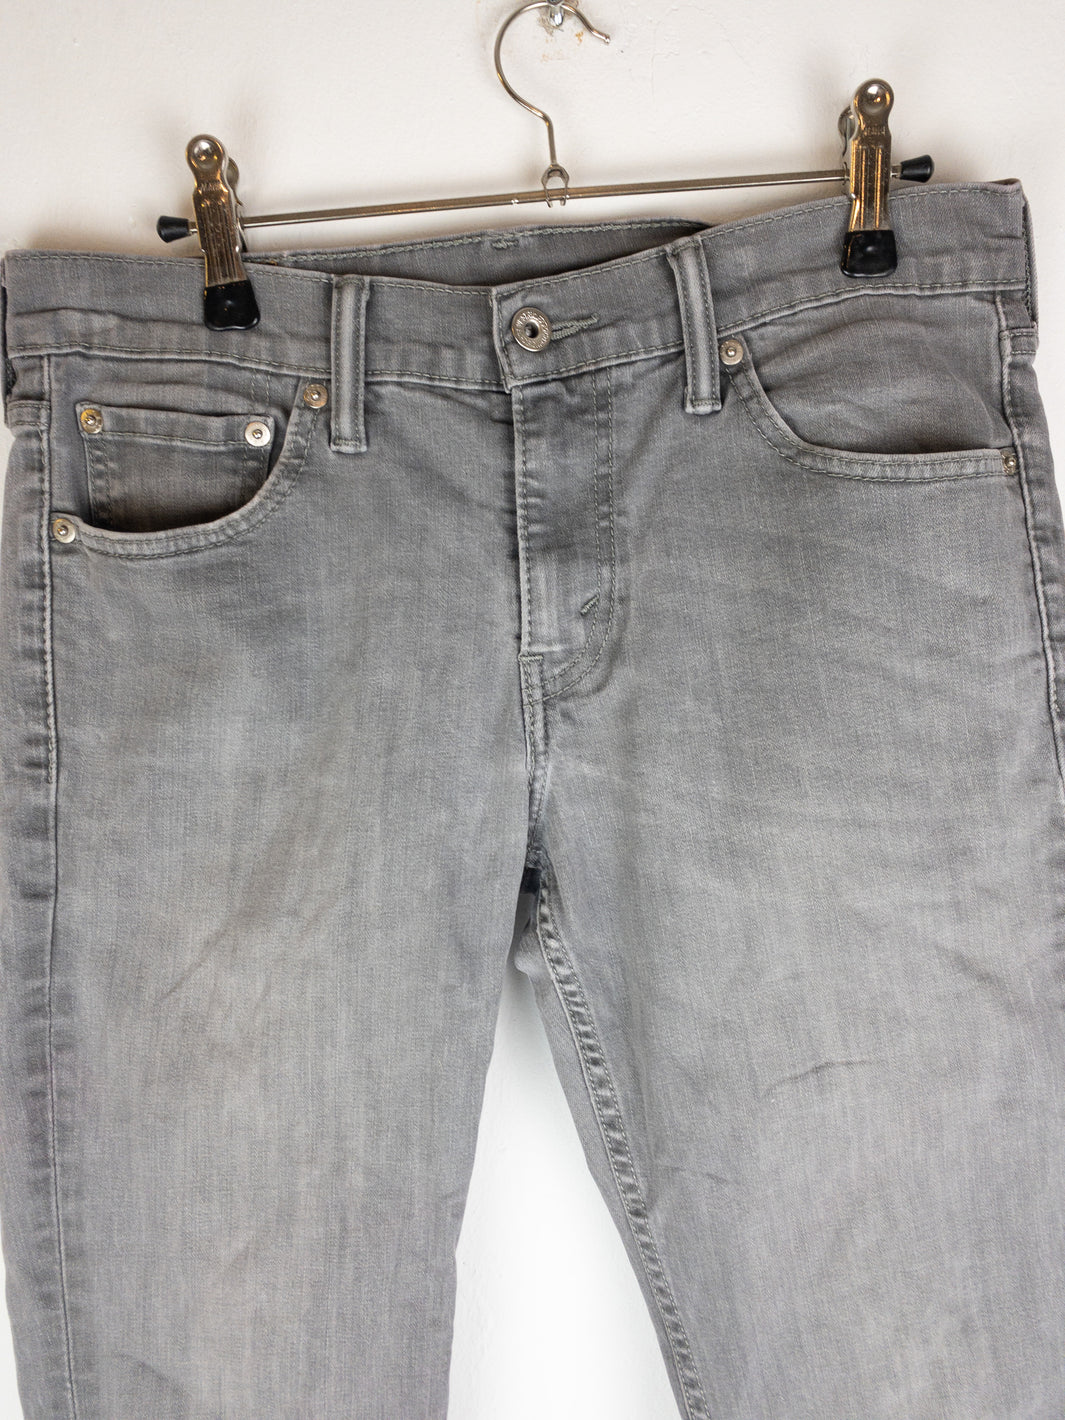 Levi’s 511 Jeans